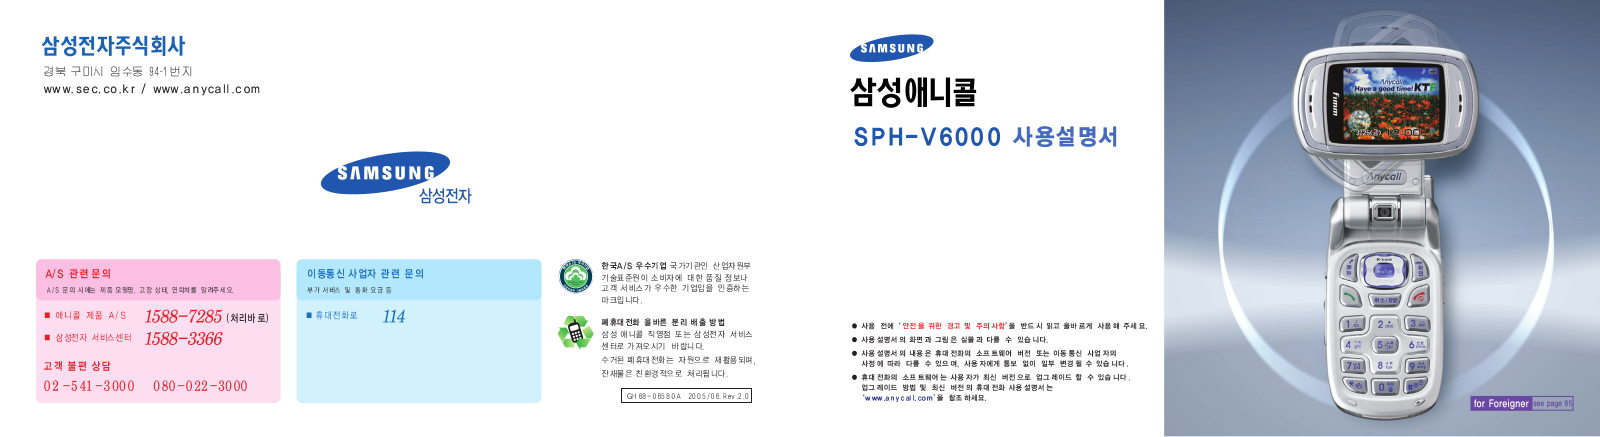 Samsung SPH-V6000 User Manual